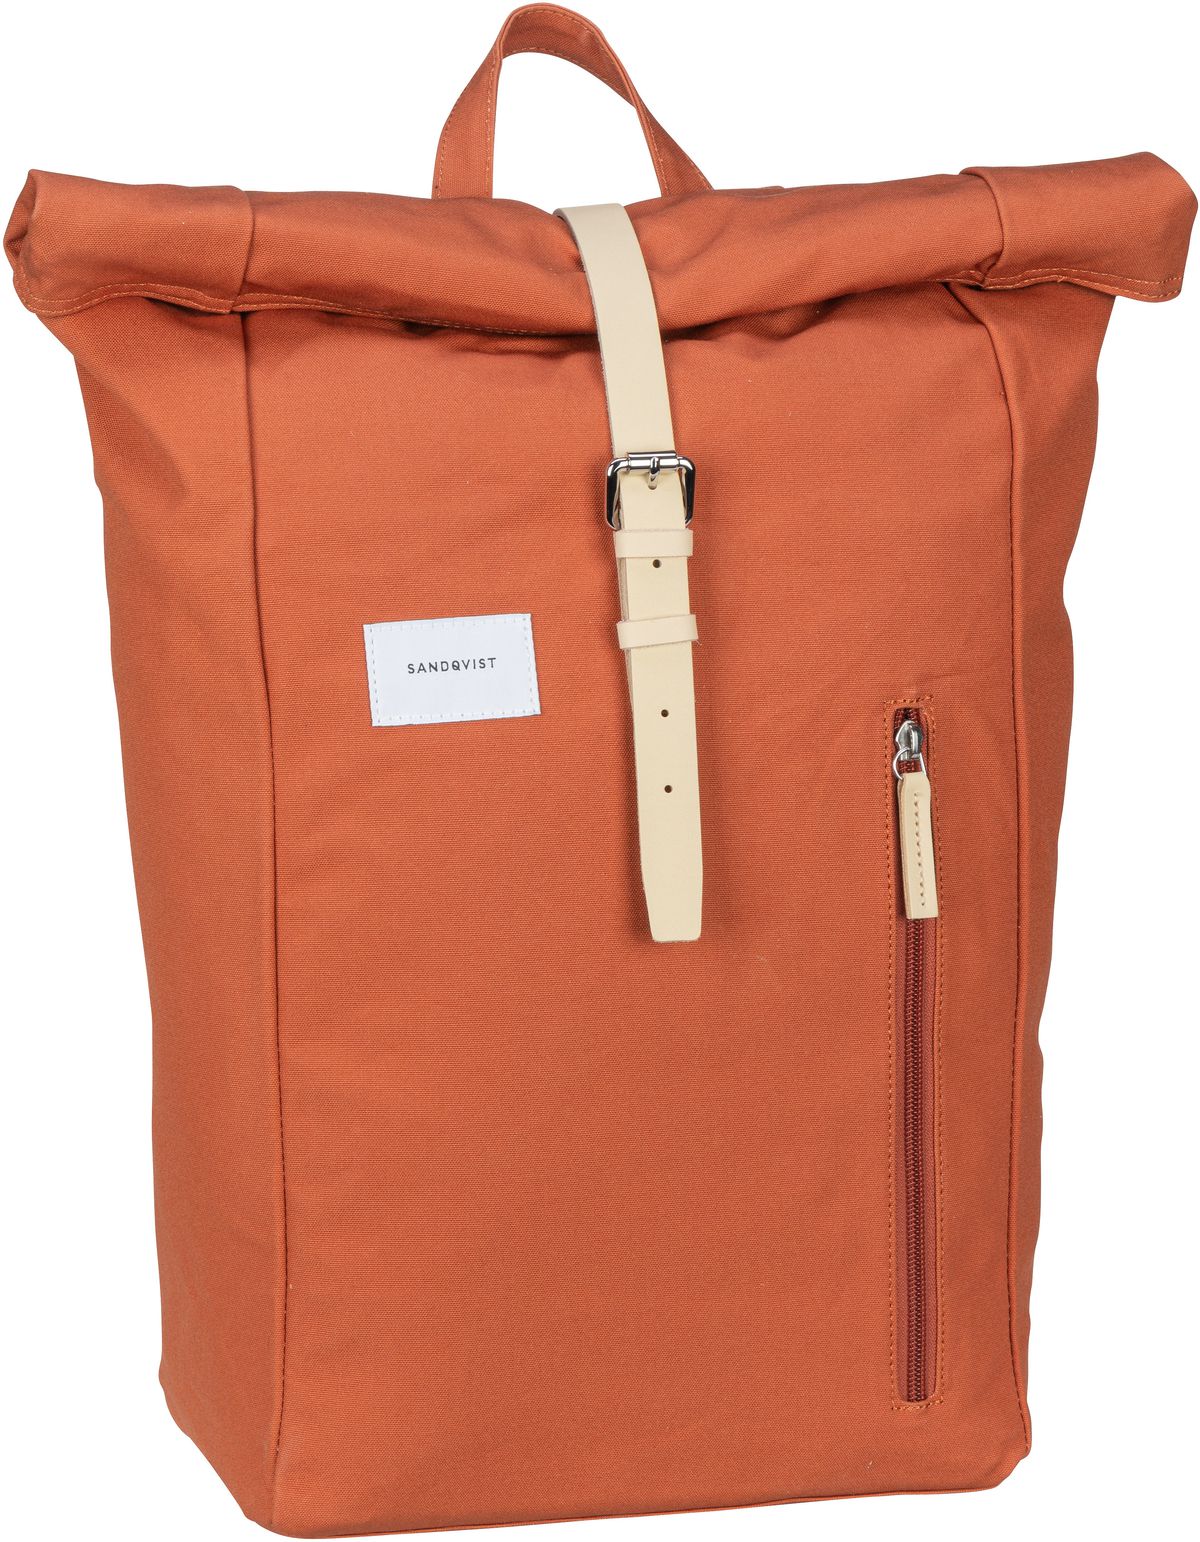 Sandqvist Dante Backpack - Orange/Natural Leather